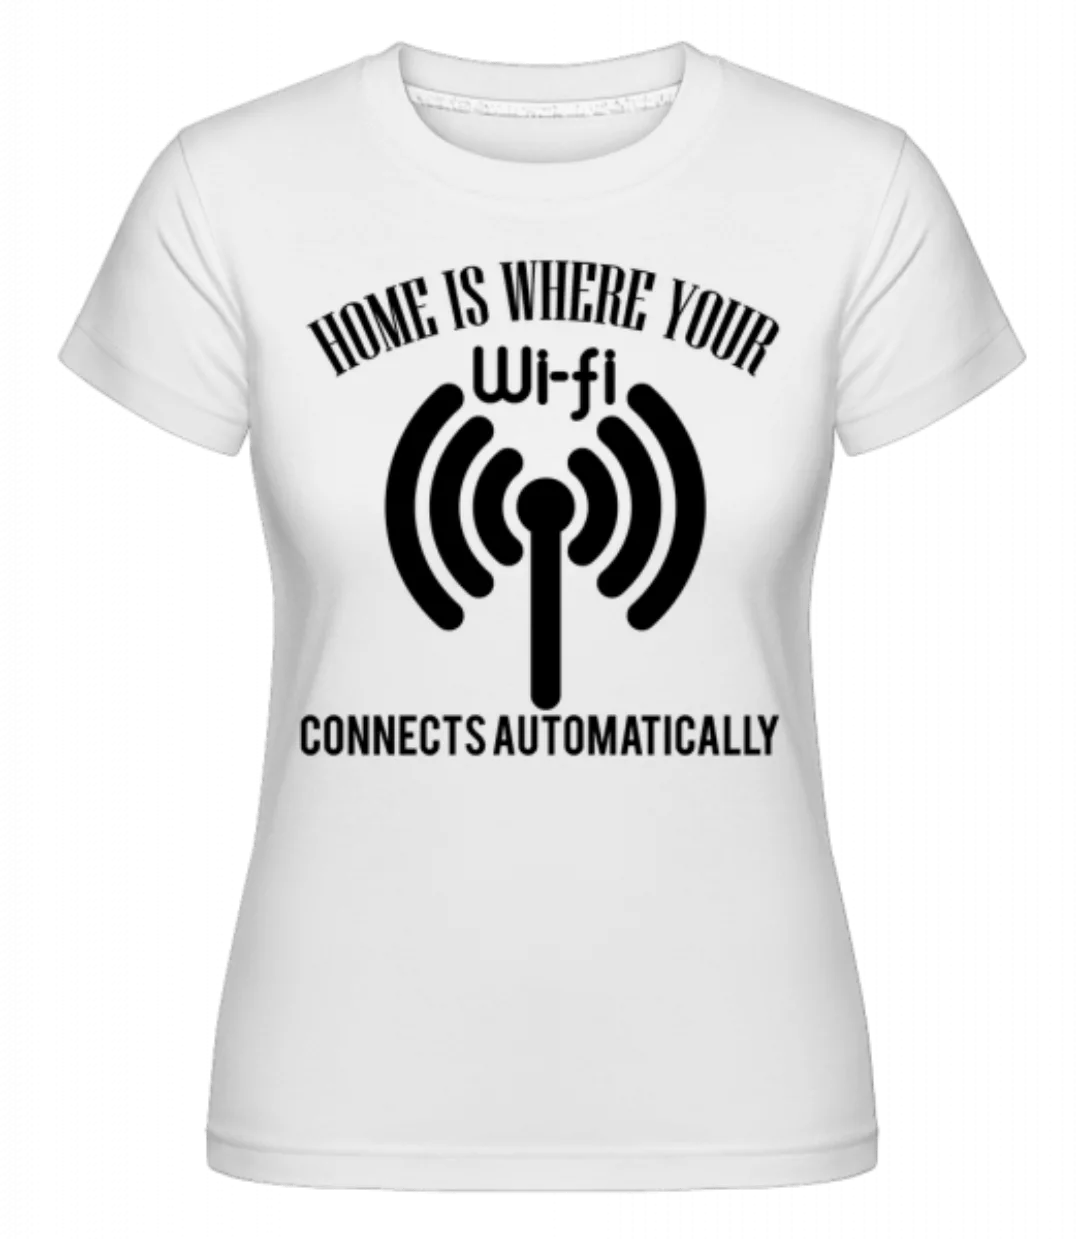 When The Wifi Connects · Shirtinator Frauen T-Shirt günstig online kaufen